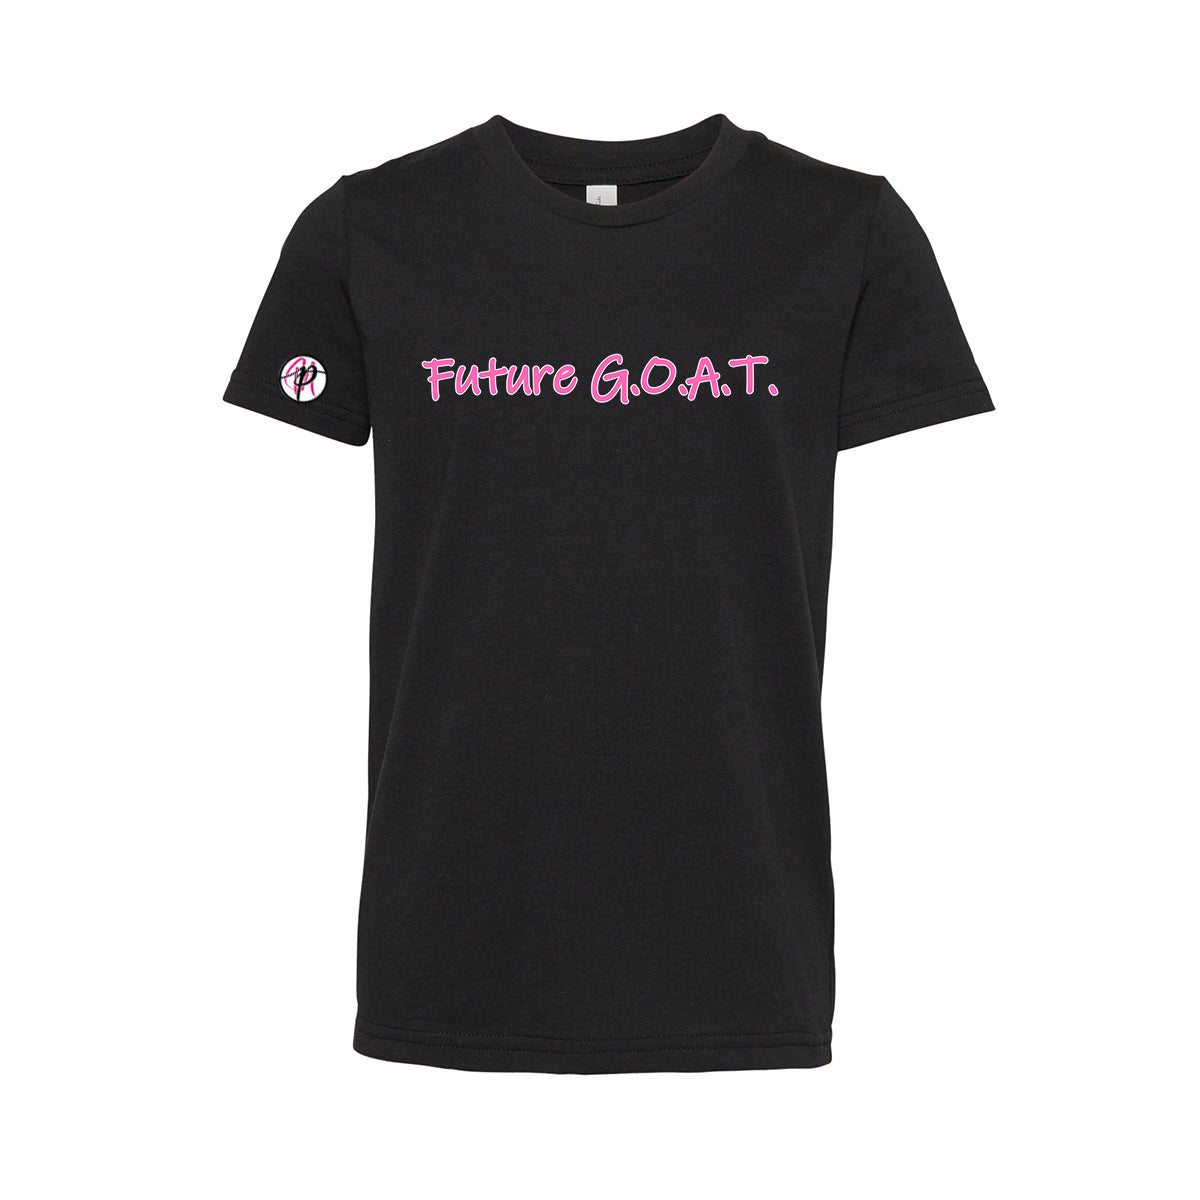 Goat Black Mamba Shirt - Teespix - Store Fashion LLC